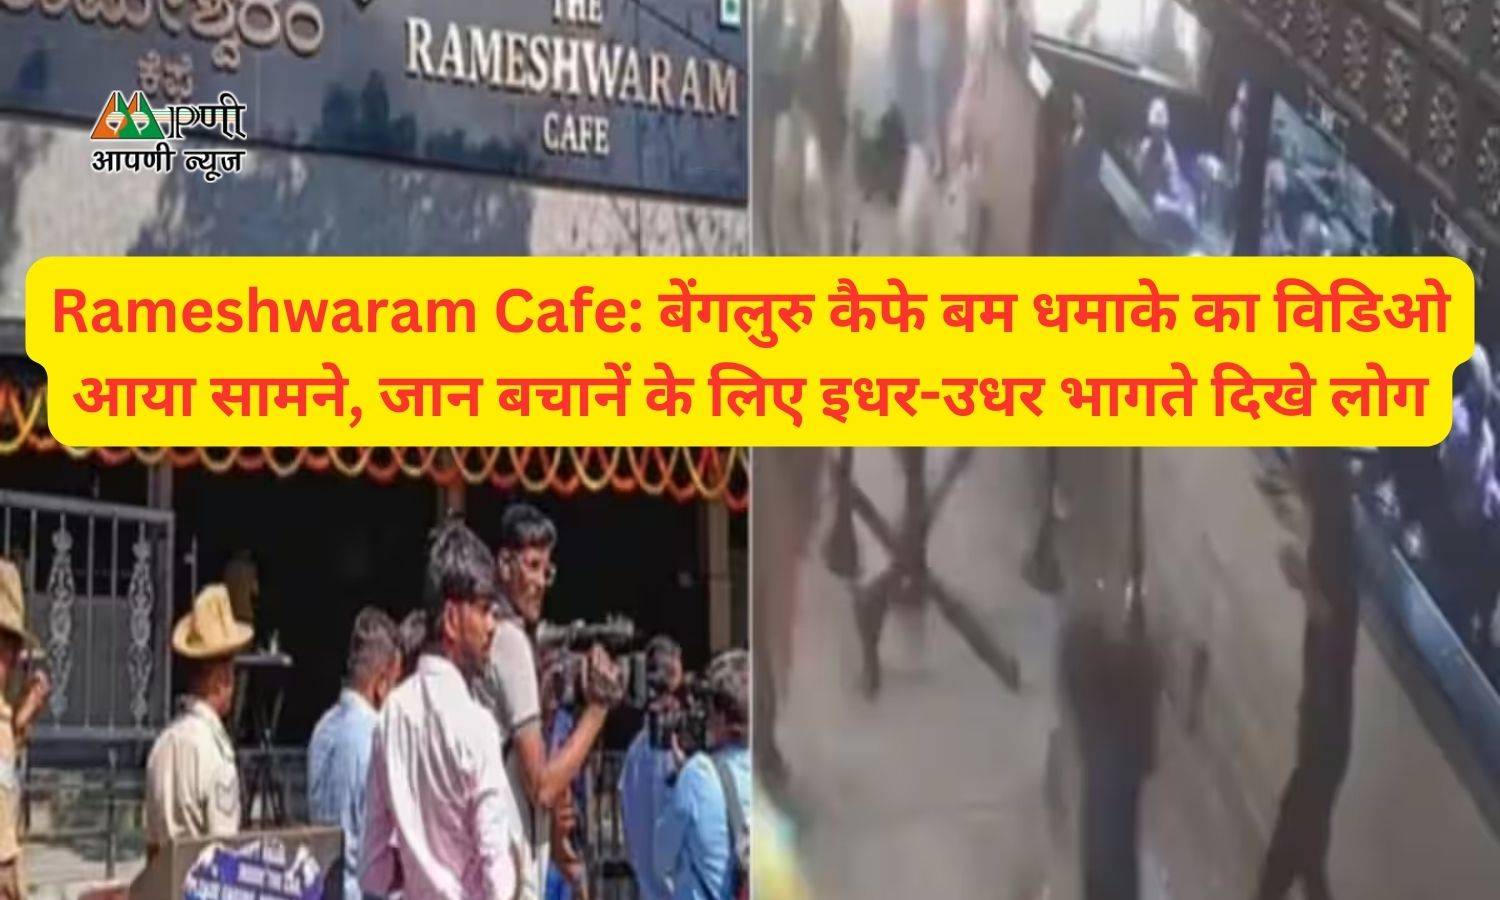 Rameshwaram Cafe: बेंगलुरु कैफे बम धमाके का विडिओ आया सामने, जान बचानें के लिए इधर-उधर भागते दिखे लोग